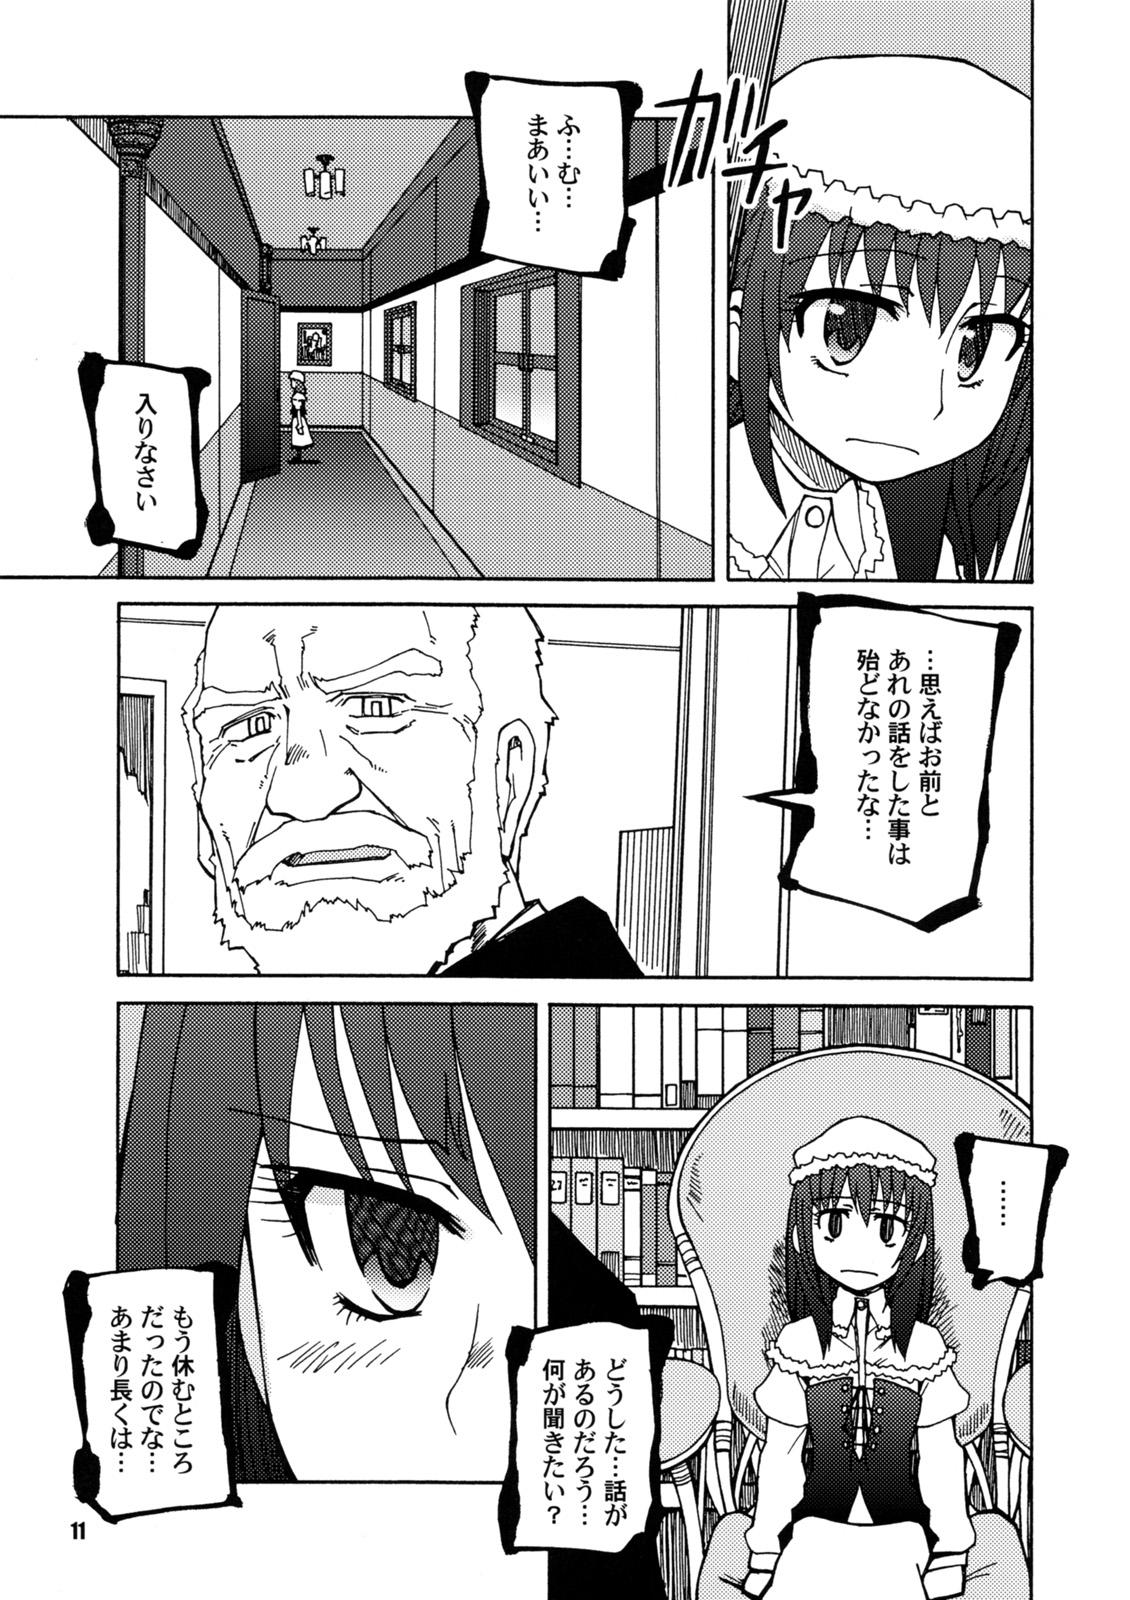 Motel SEASON OF THE WITCH - Umineko no naku koro ni Piercing - Page 10